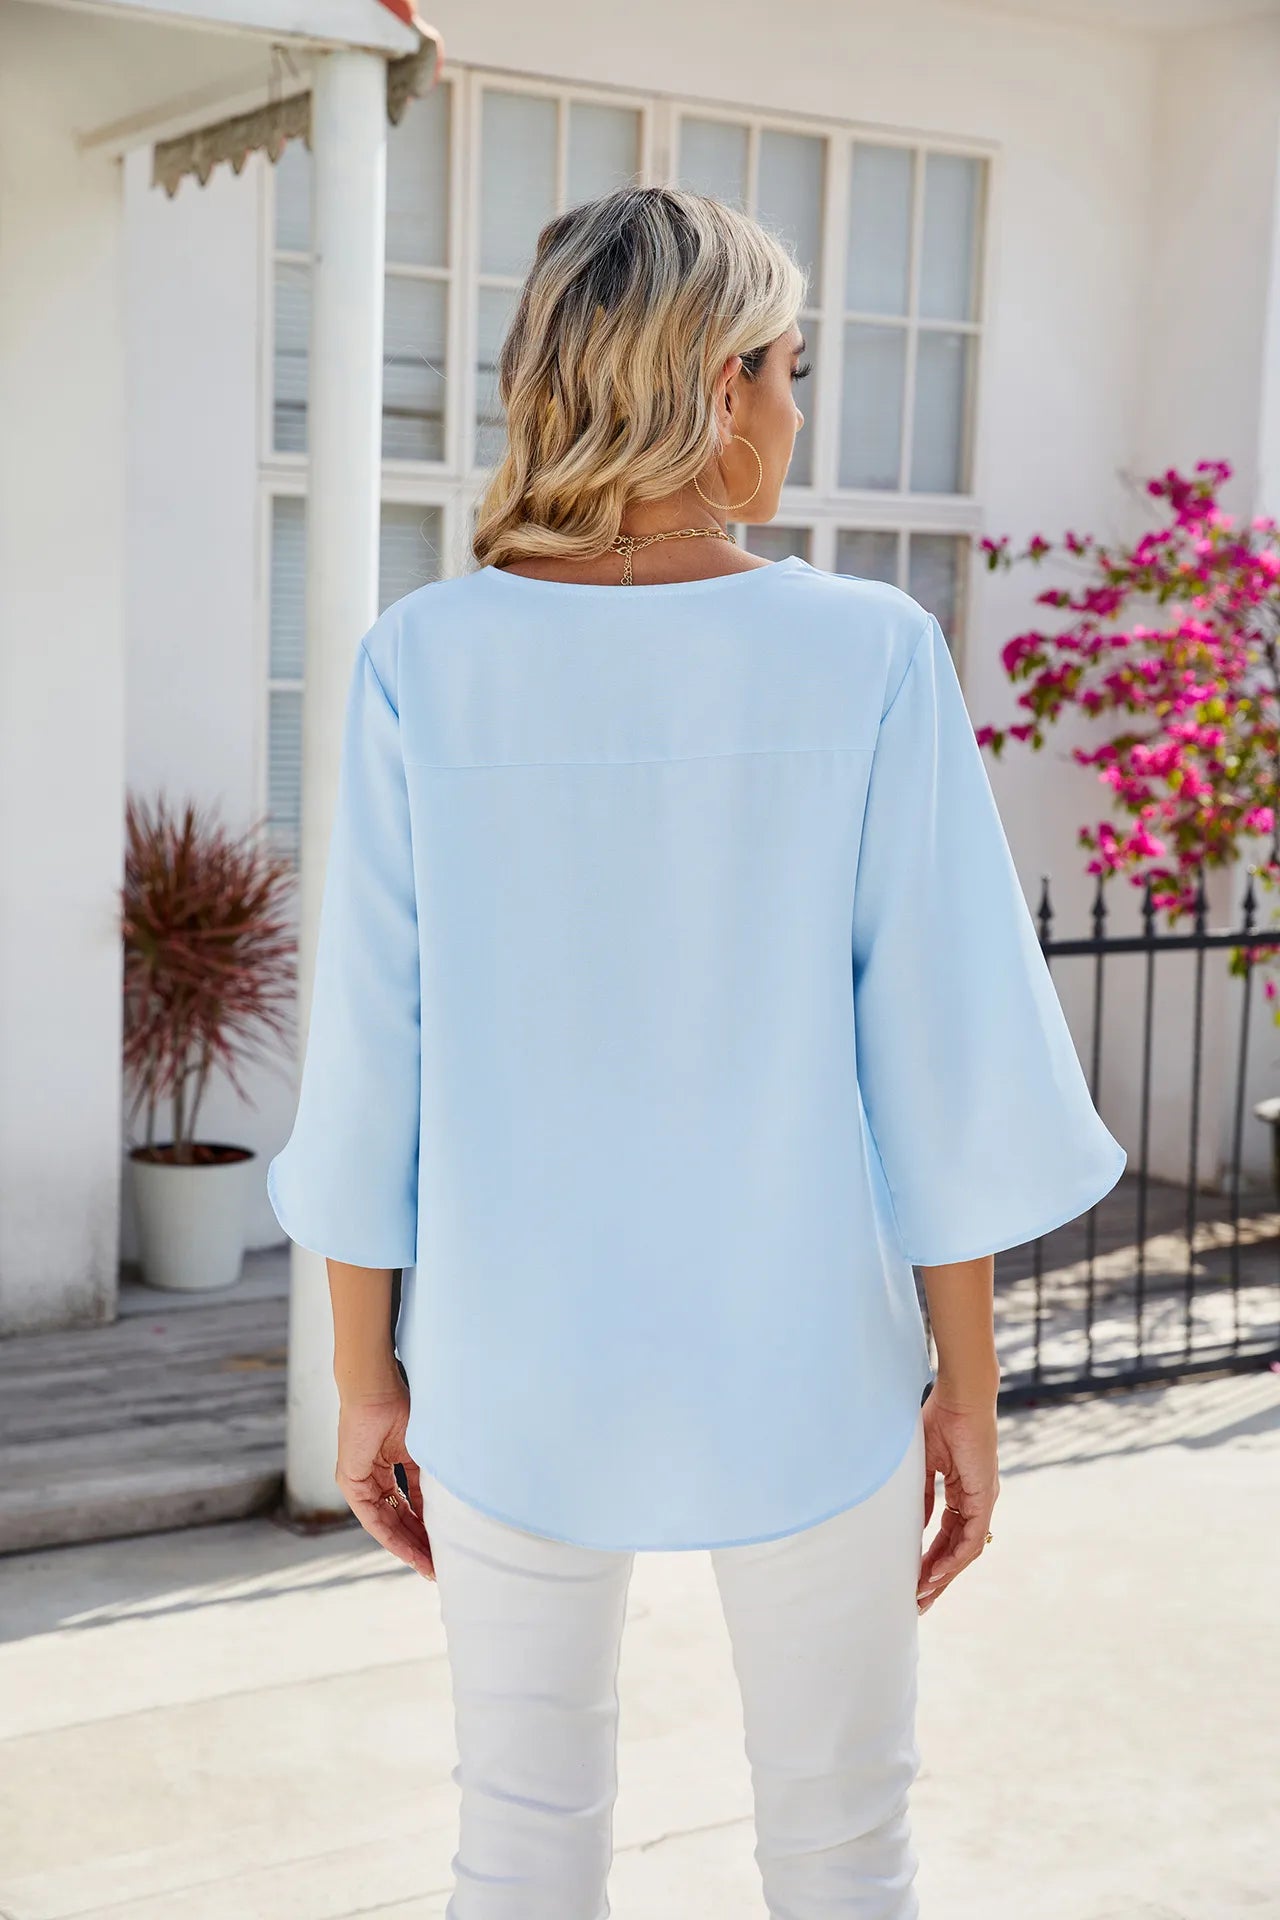 Teresa - Chemises pour femmes Tops à manches courtes Chemisier à col lapon Chemise tunique élégante